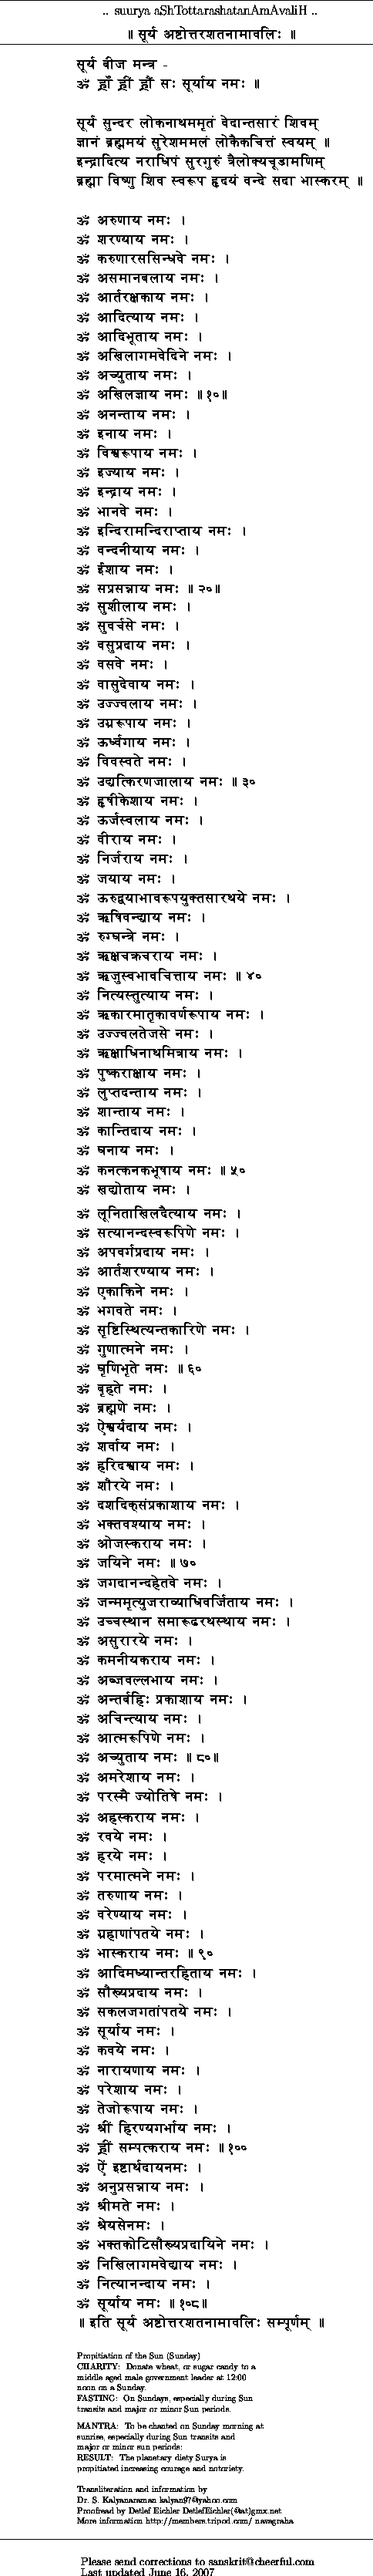 108 names of surya dev